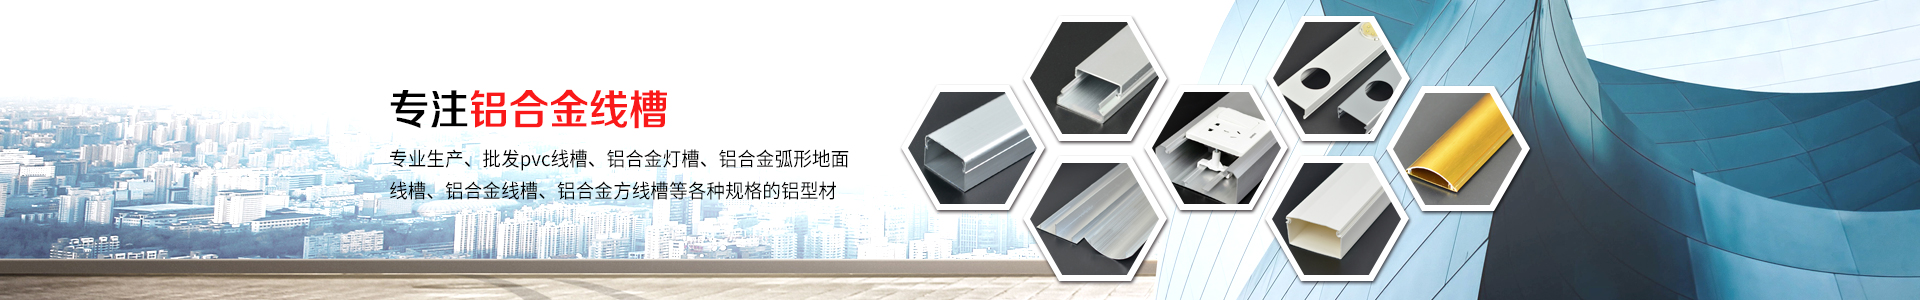 盘点铝合金线槽具备的四大优势-江阴市鸣诚铝业有限公司